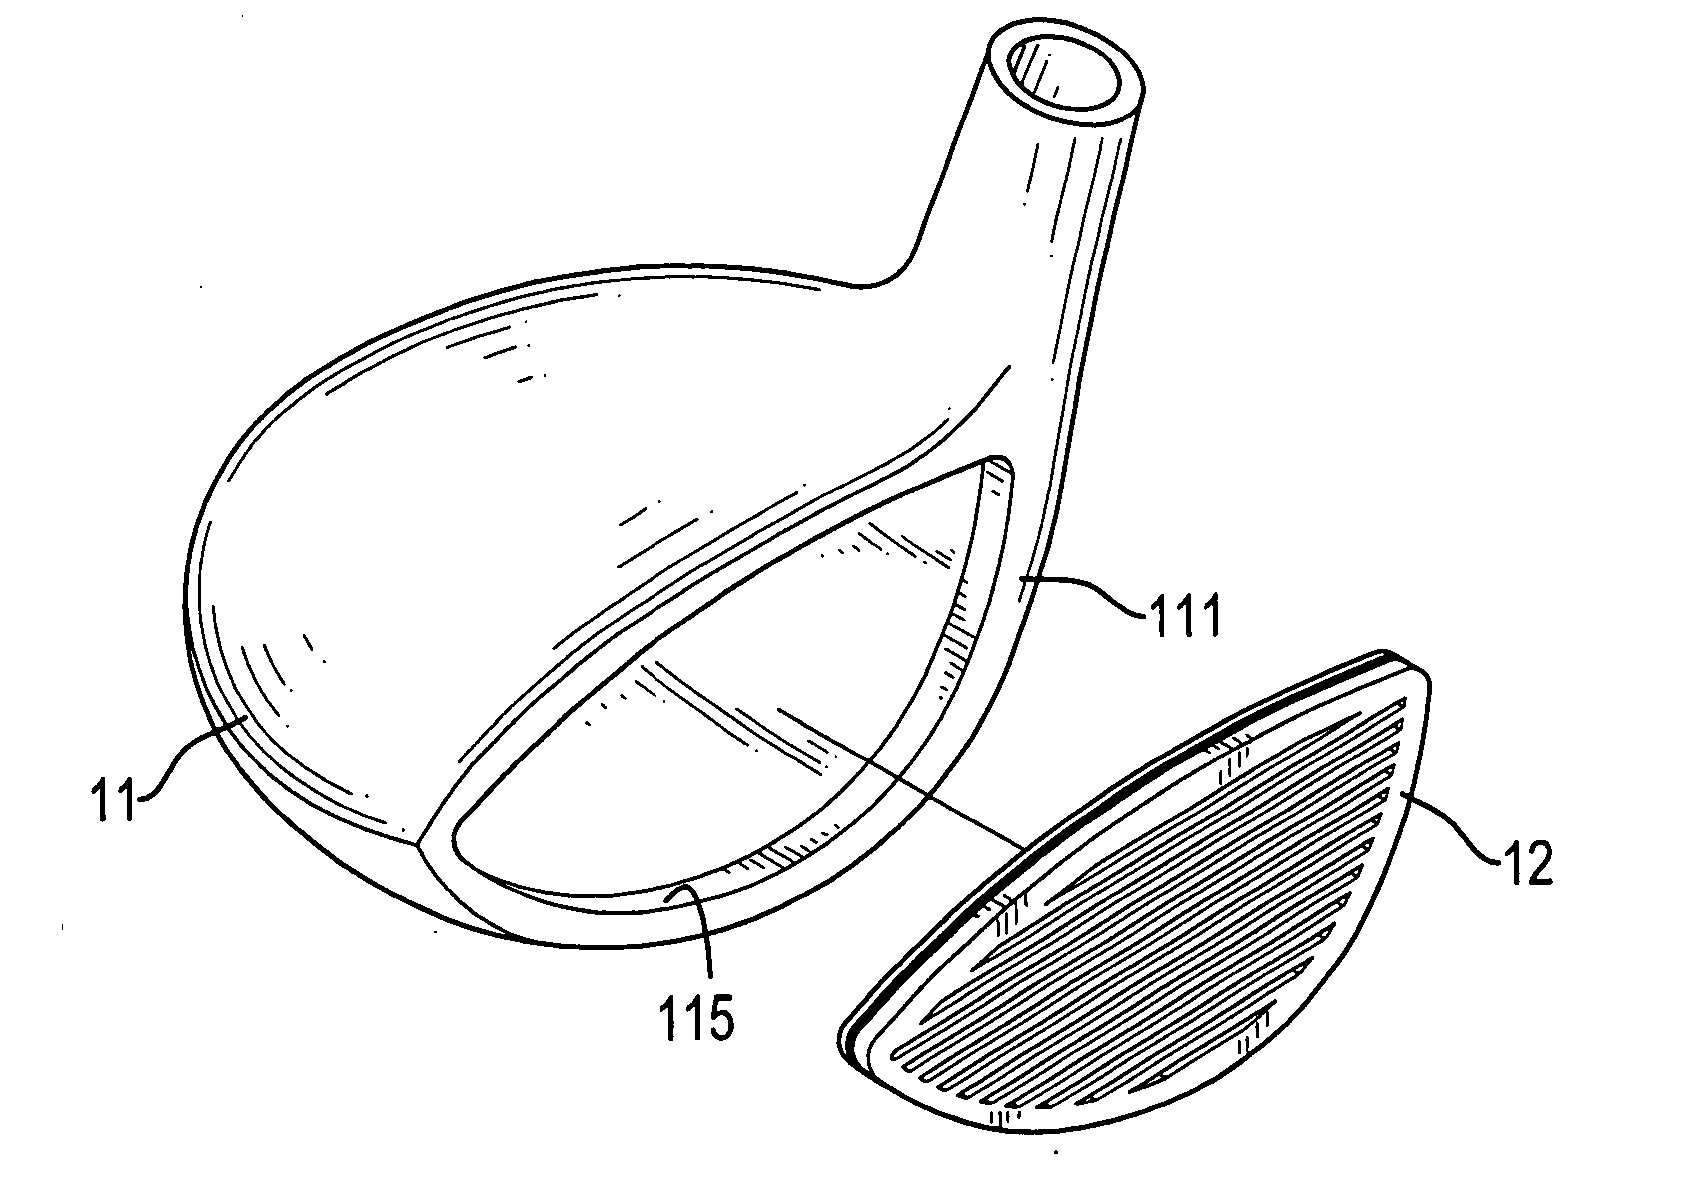 Wood type golf club head